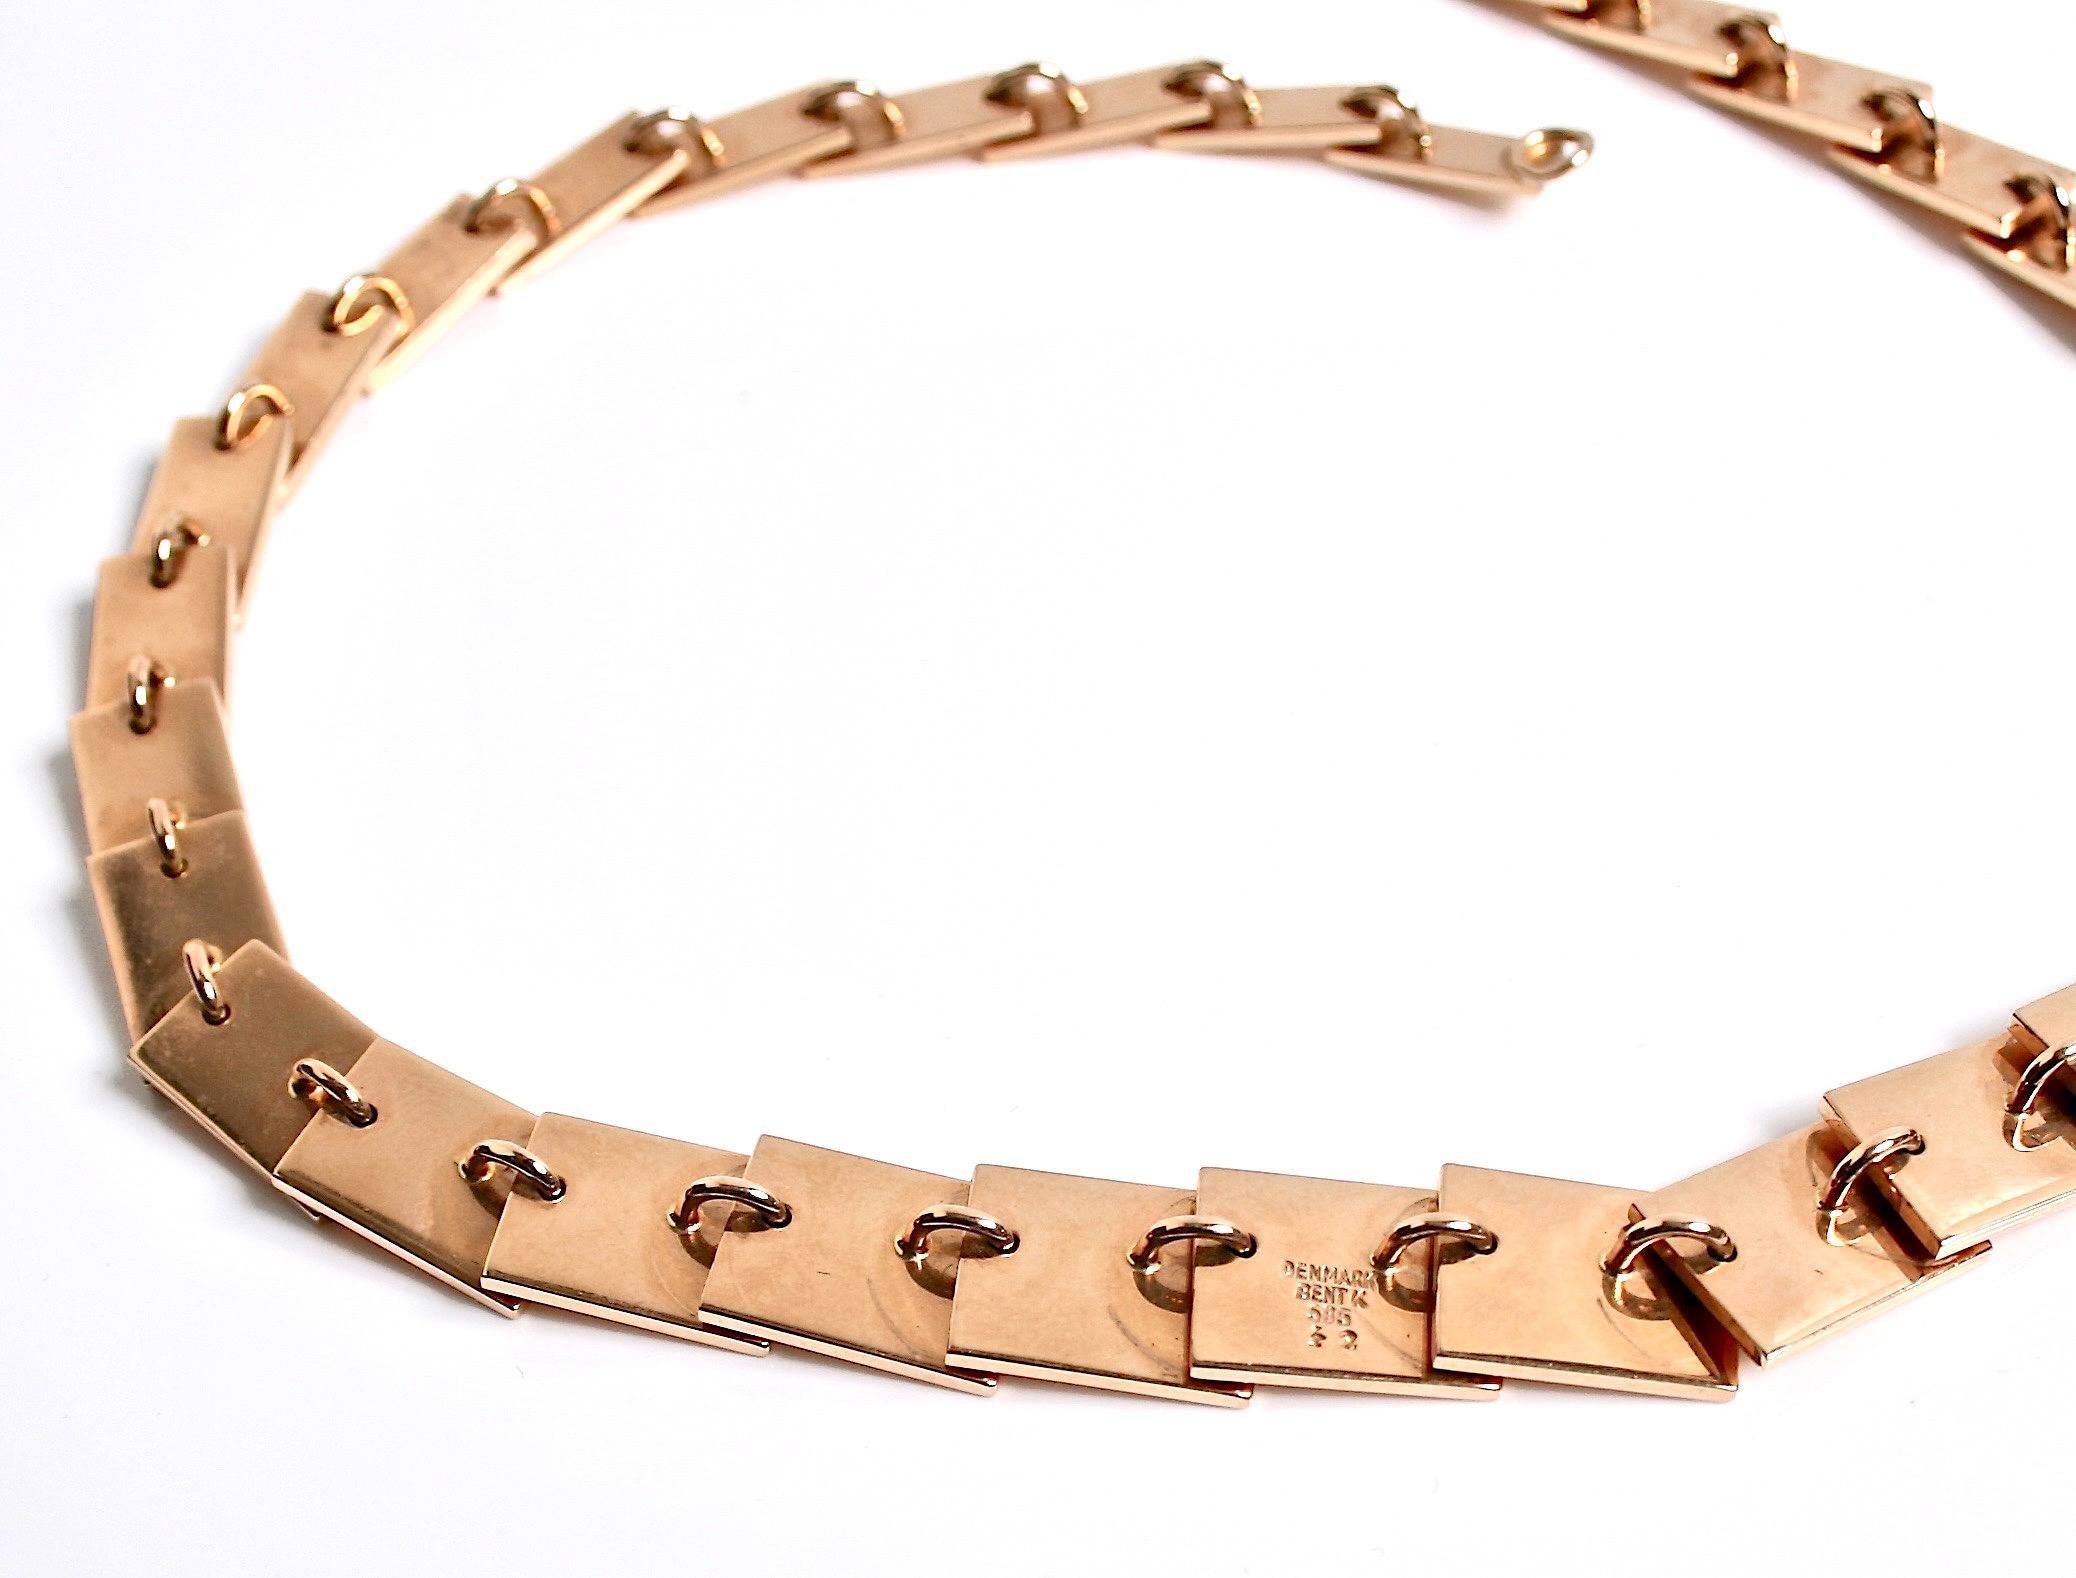  14k Gold Necklace designed by Bent Knudsen Denmark For Sale 1